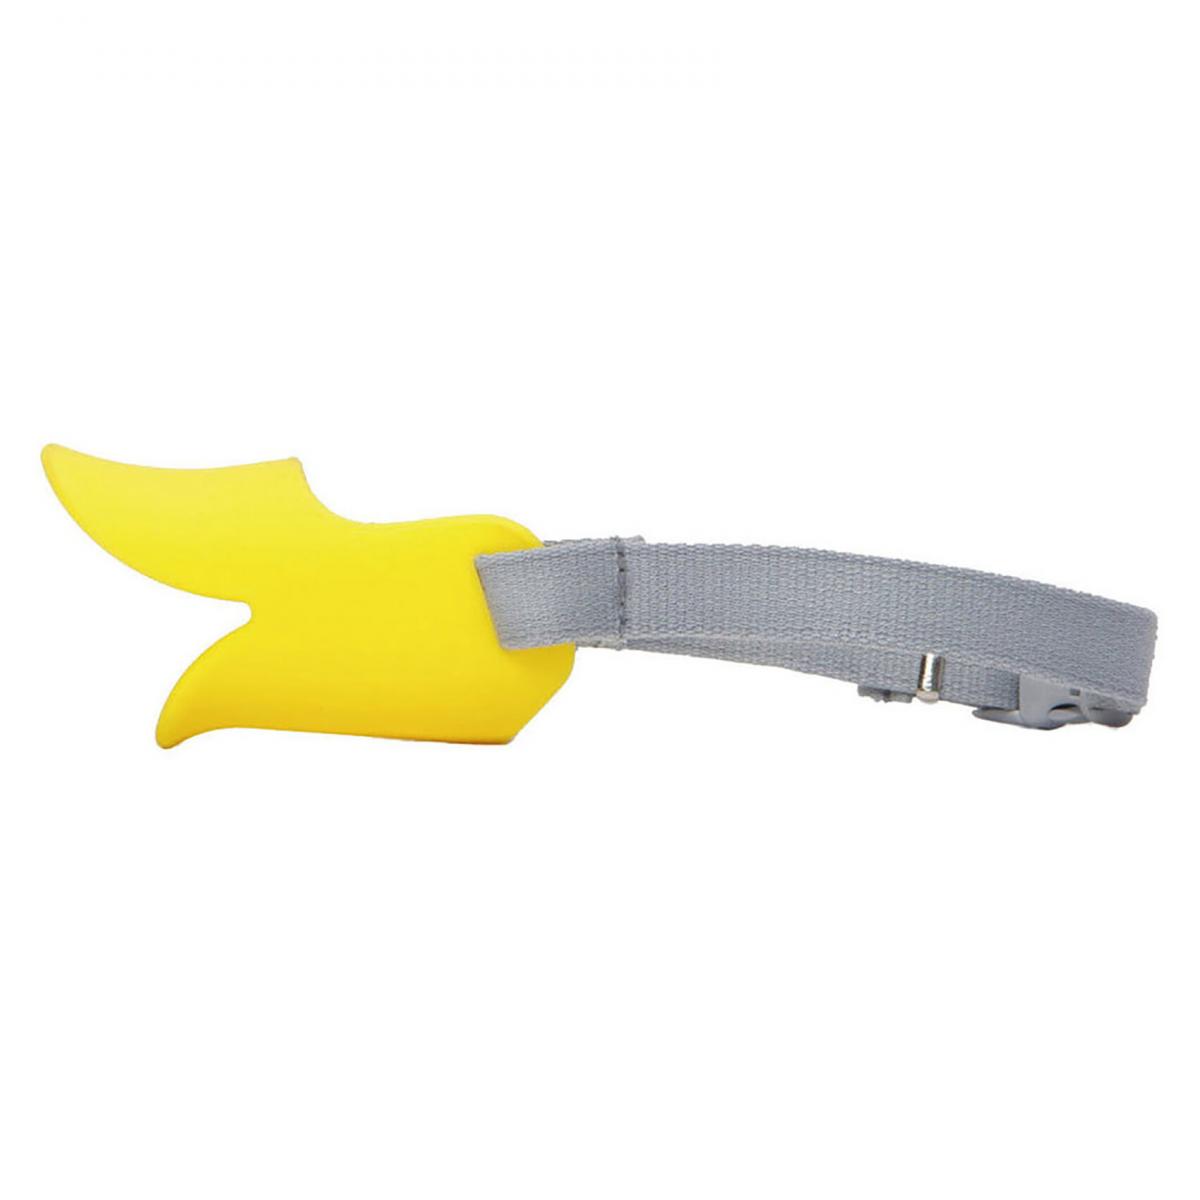 Quack S size (Yellow)